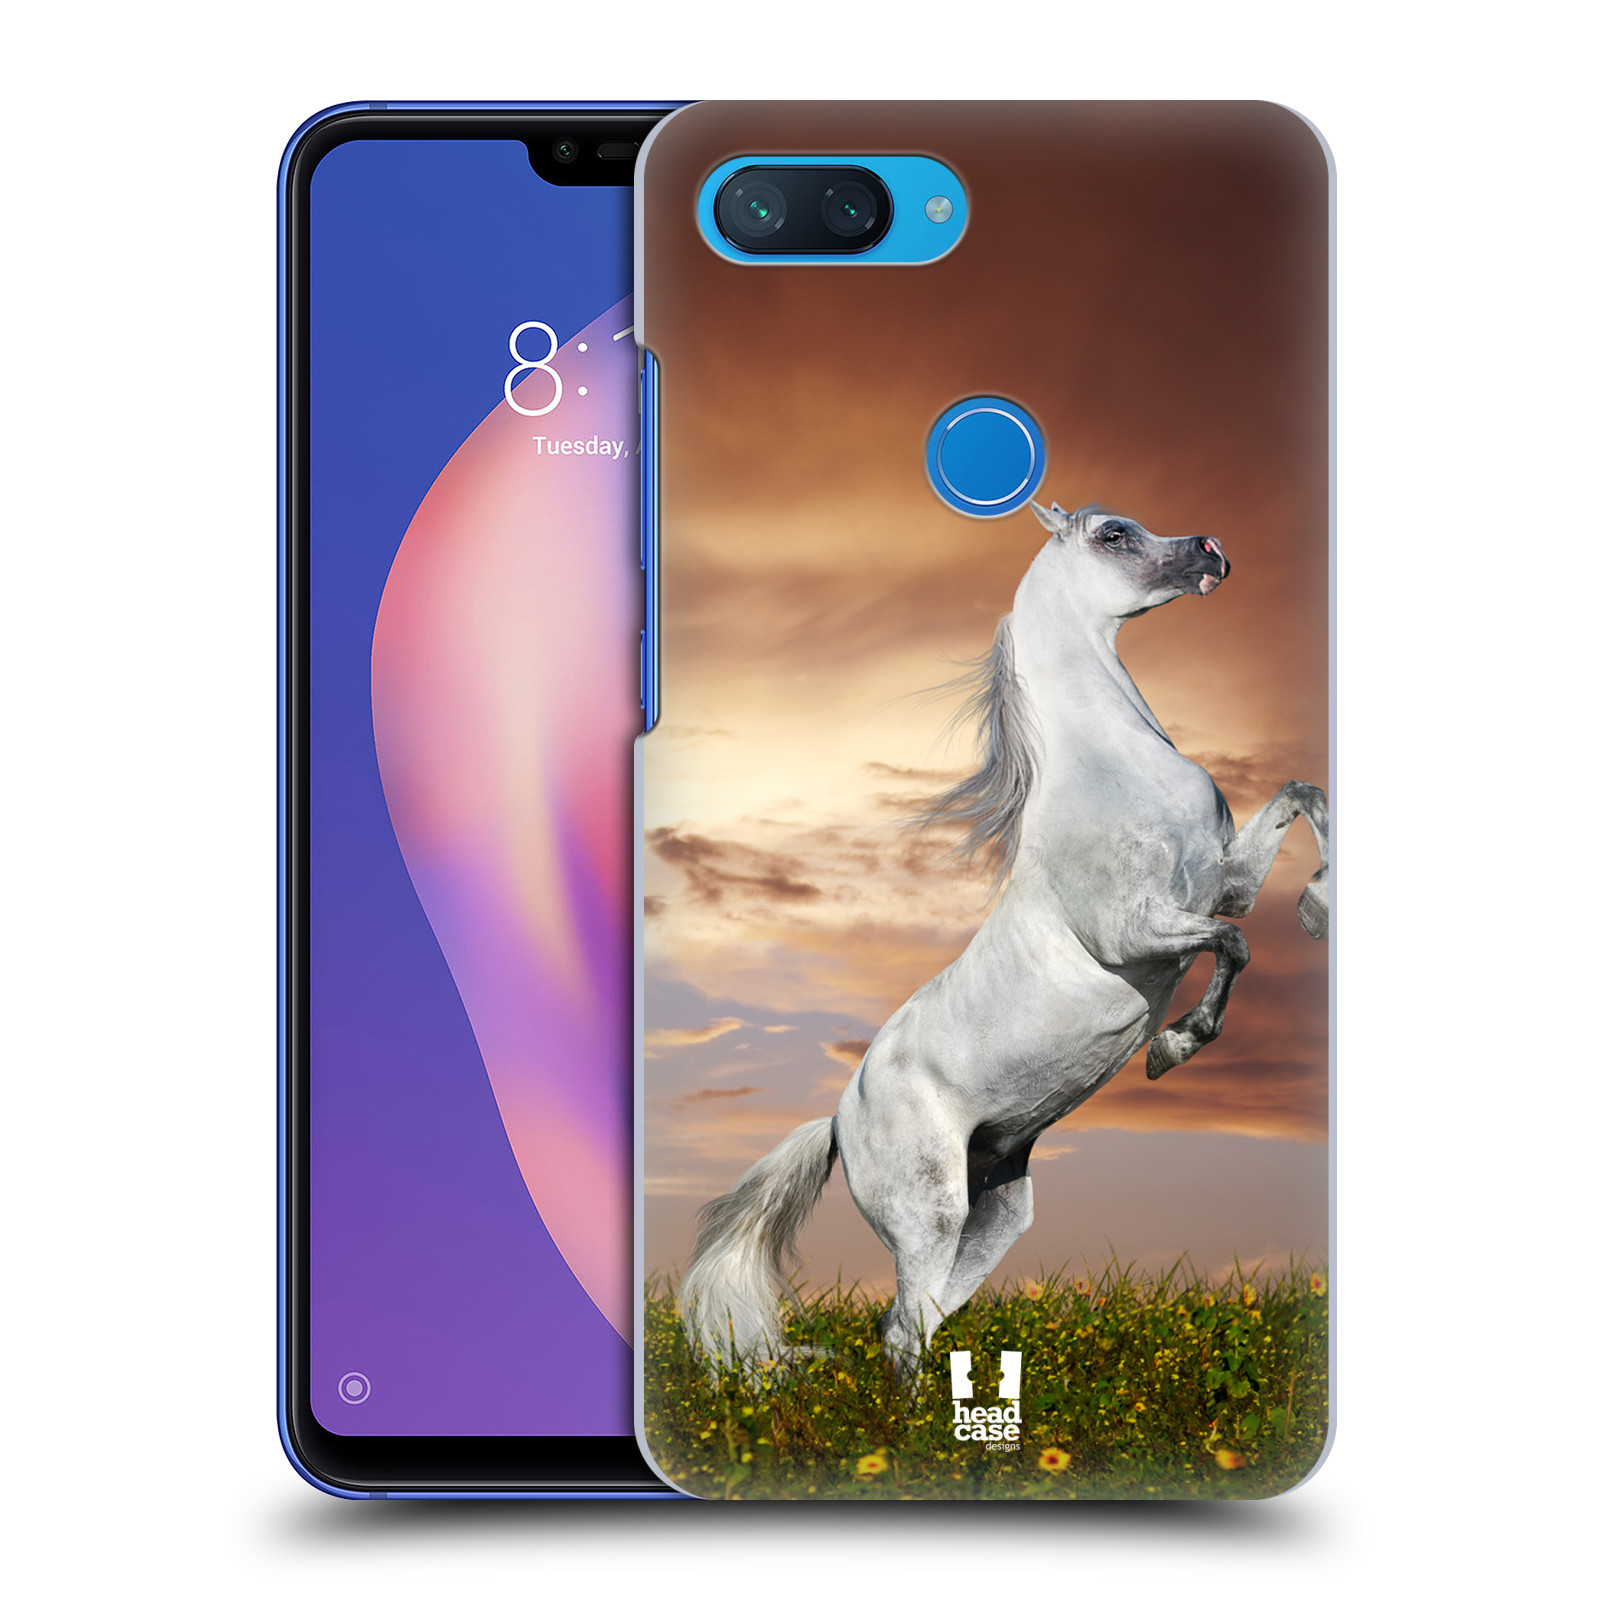 Zadní obal pro mobil Xiaomi Mi 8 LITE - HEAD CASE - Svět zvířat divoký kůň